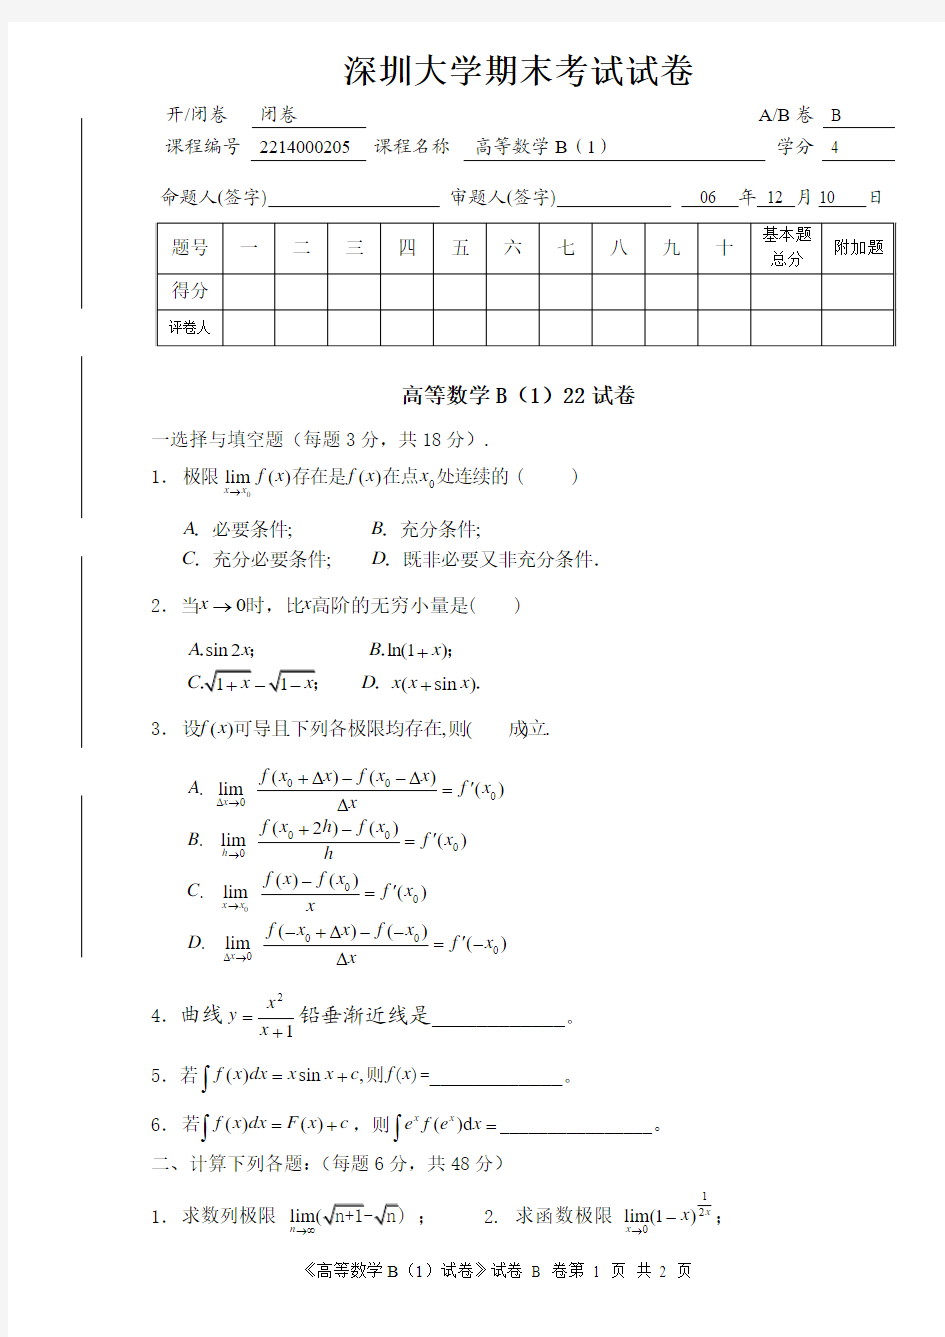 高等数学 深圳大学 期末考试